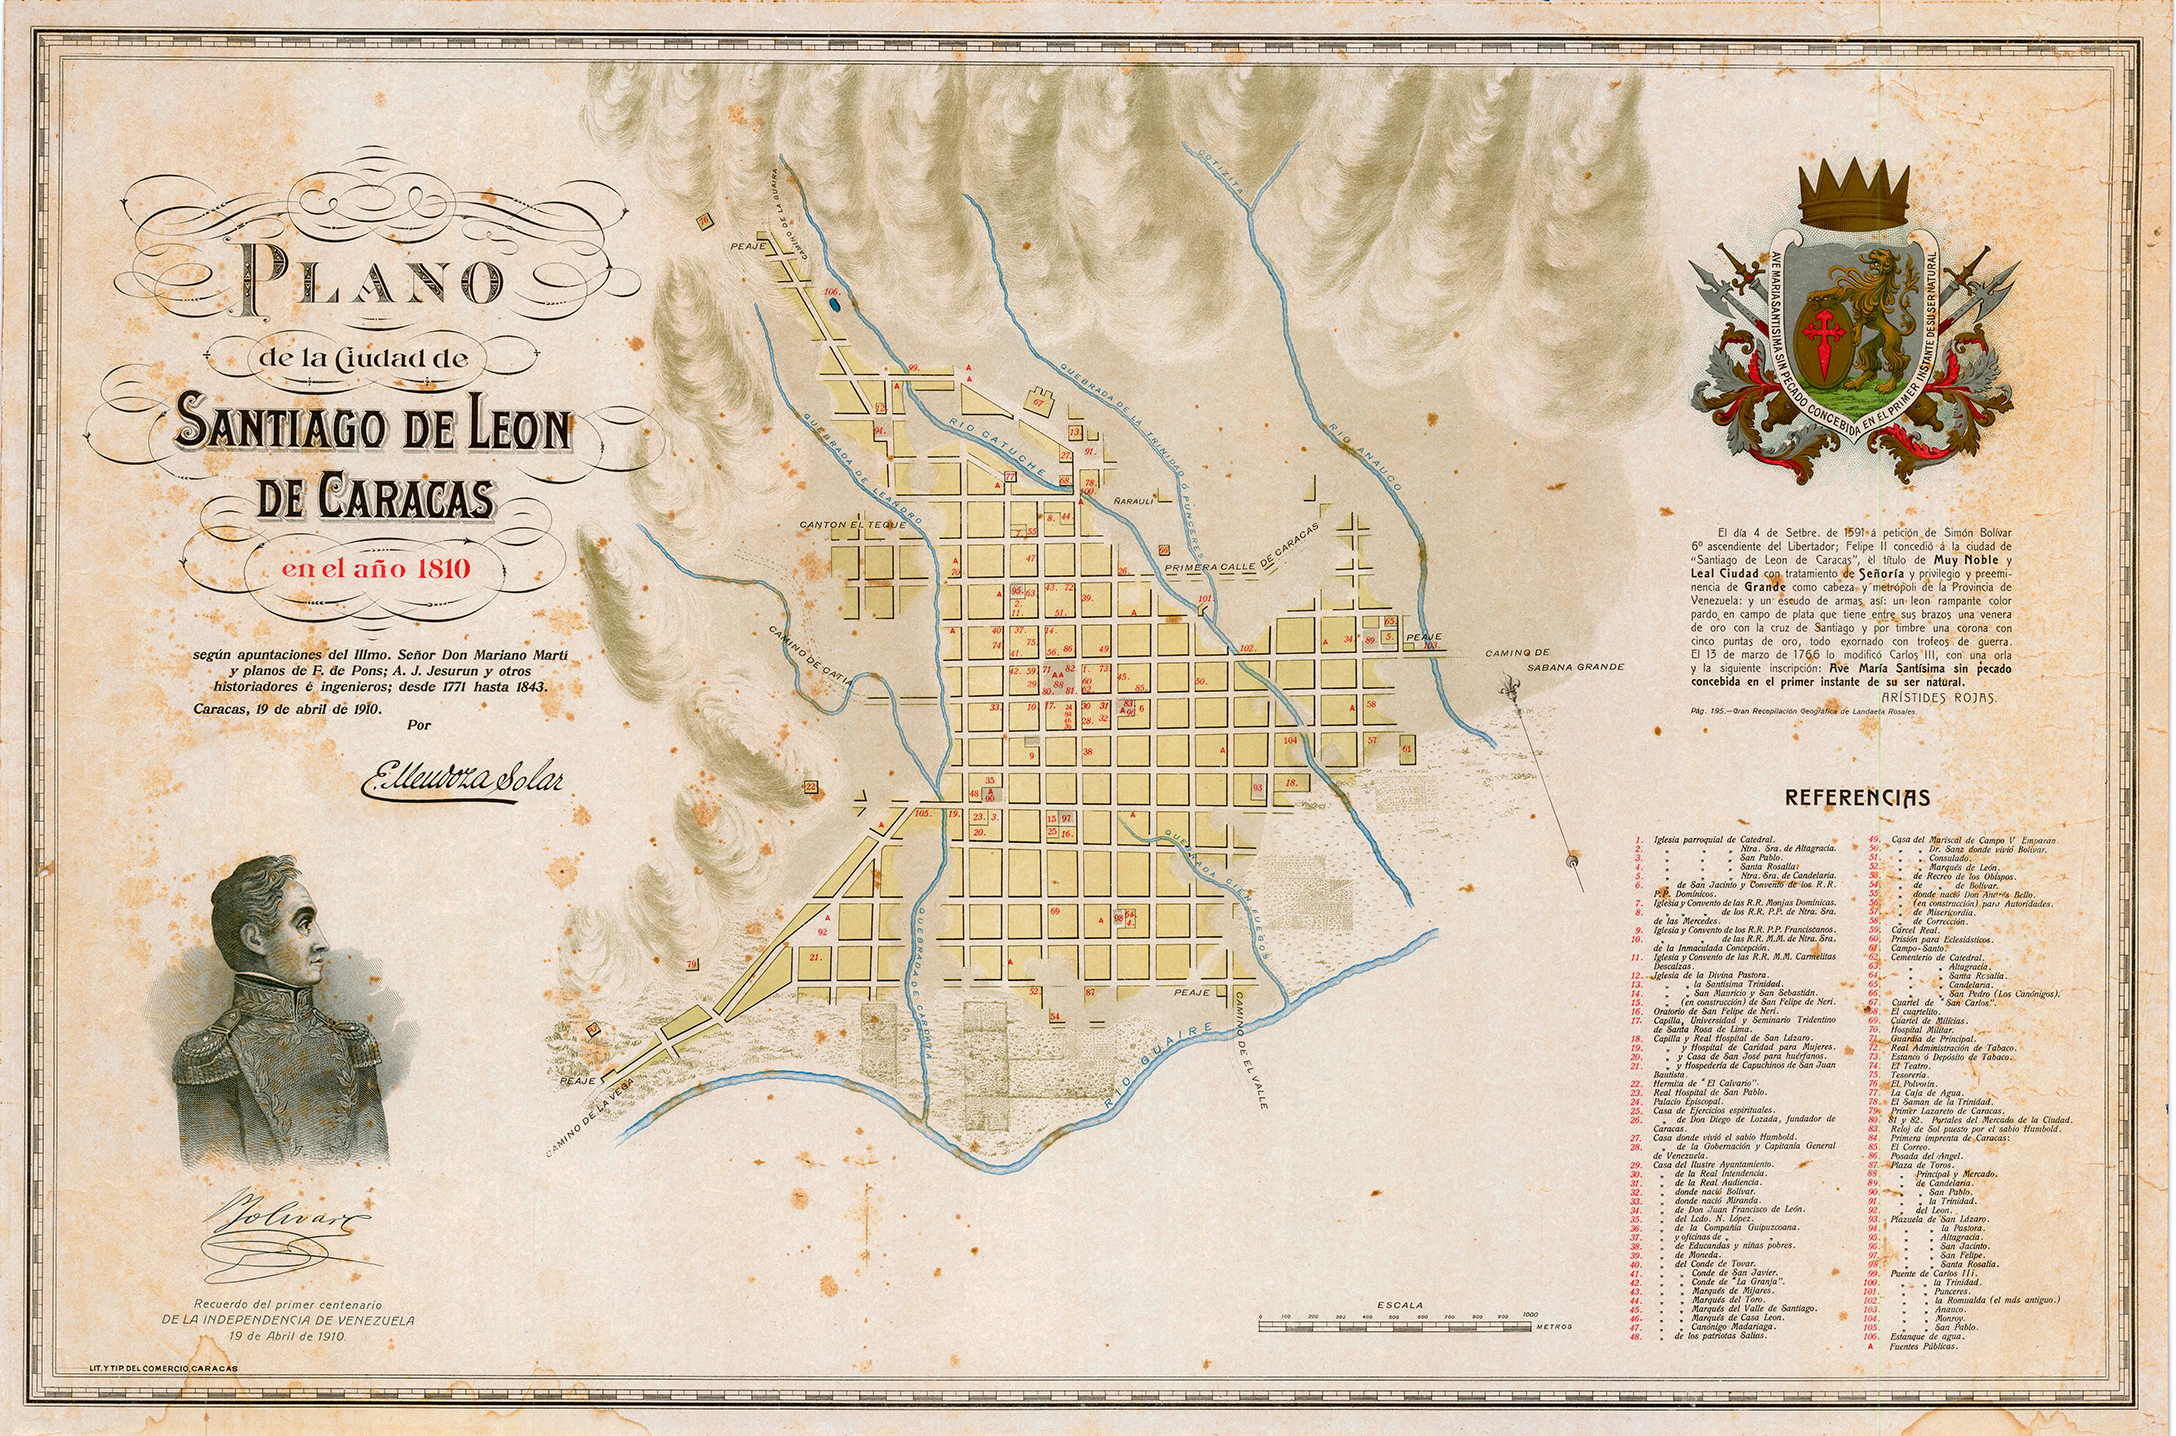 Plano de Santiago de León de Caracas (1810)